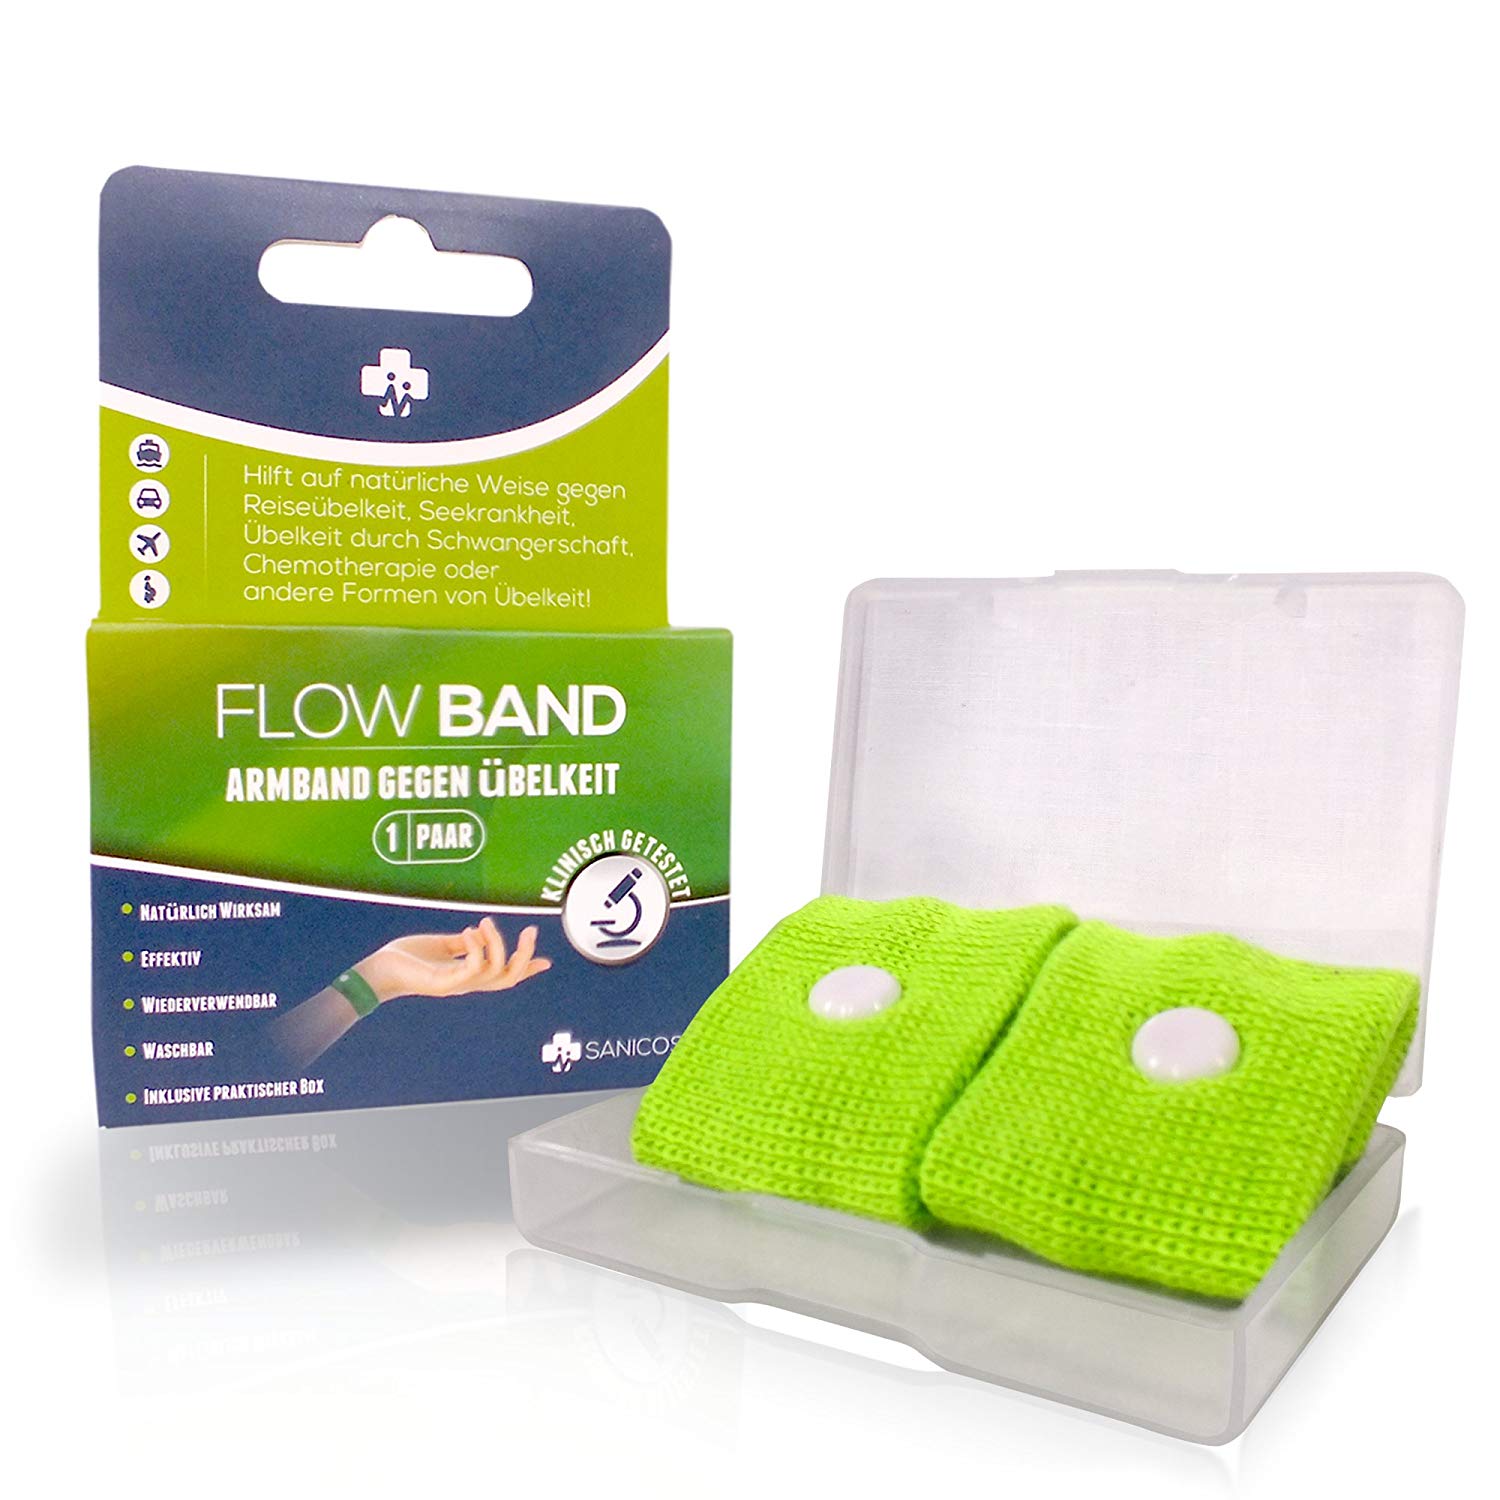 Sanicos Flow Band - Hochwertiges Akupressur Armband – Befreit zuverlässig von Übelkeit – Natürlich wirksam bei Schwangerschaftsübelkeit, Seekrankheit, Reiseübelkeit uvm - inclusive praktischer Box